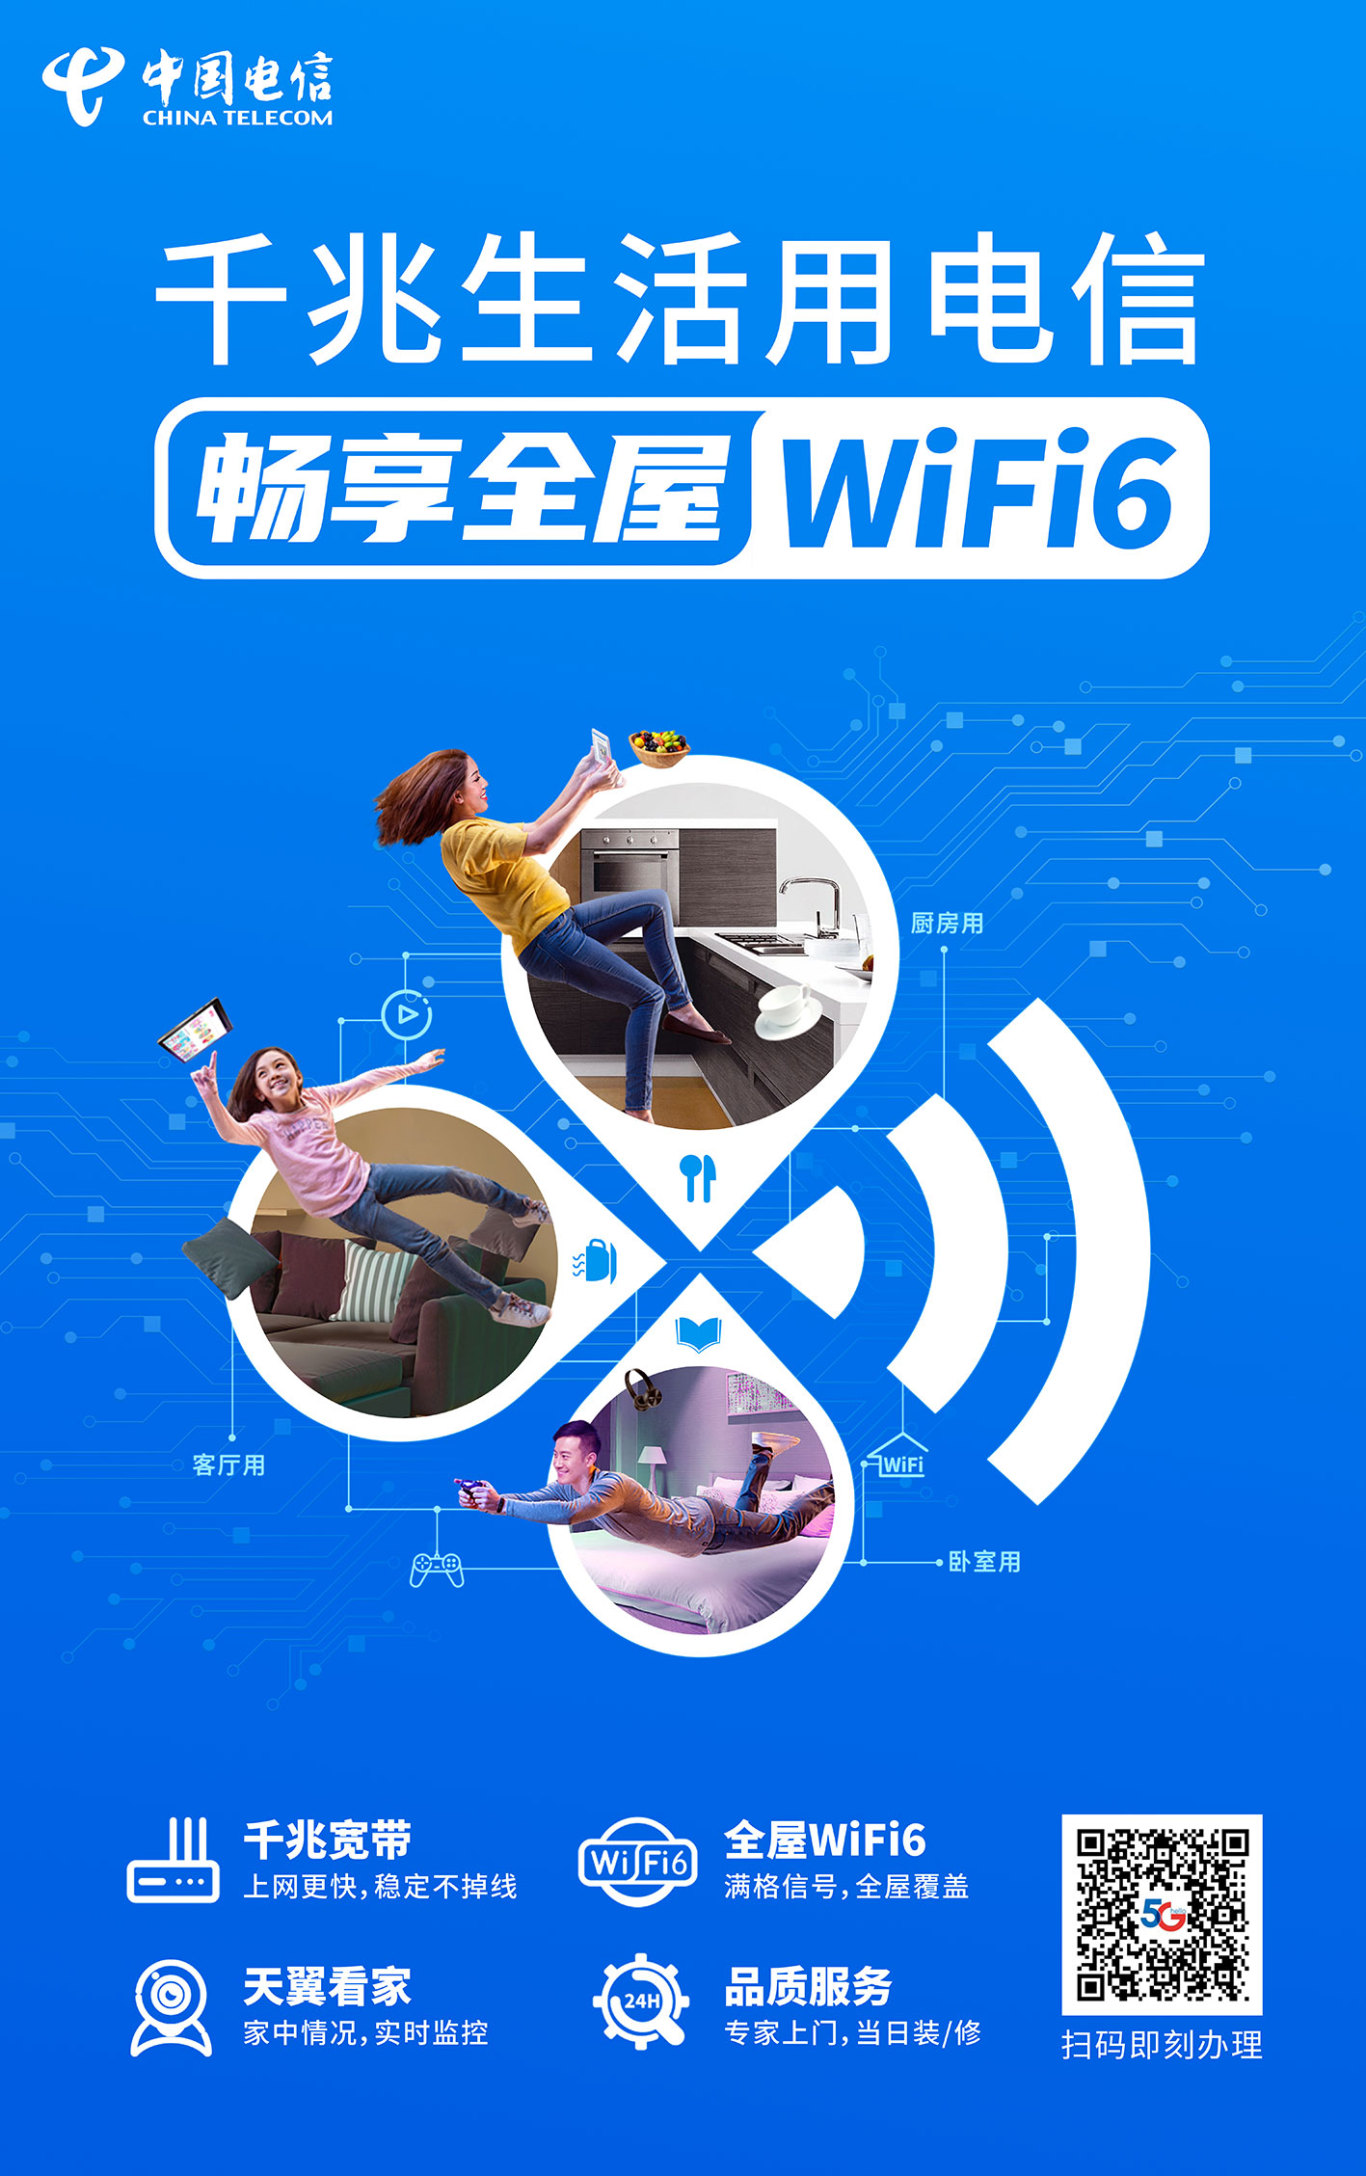 中国电信 主视觉设计 营销海报设计图7